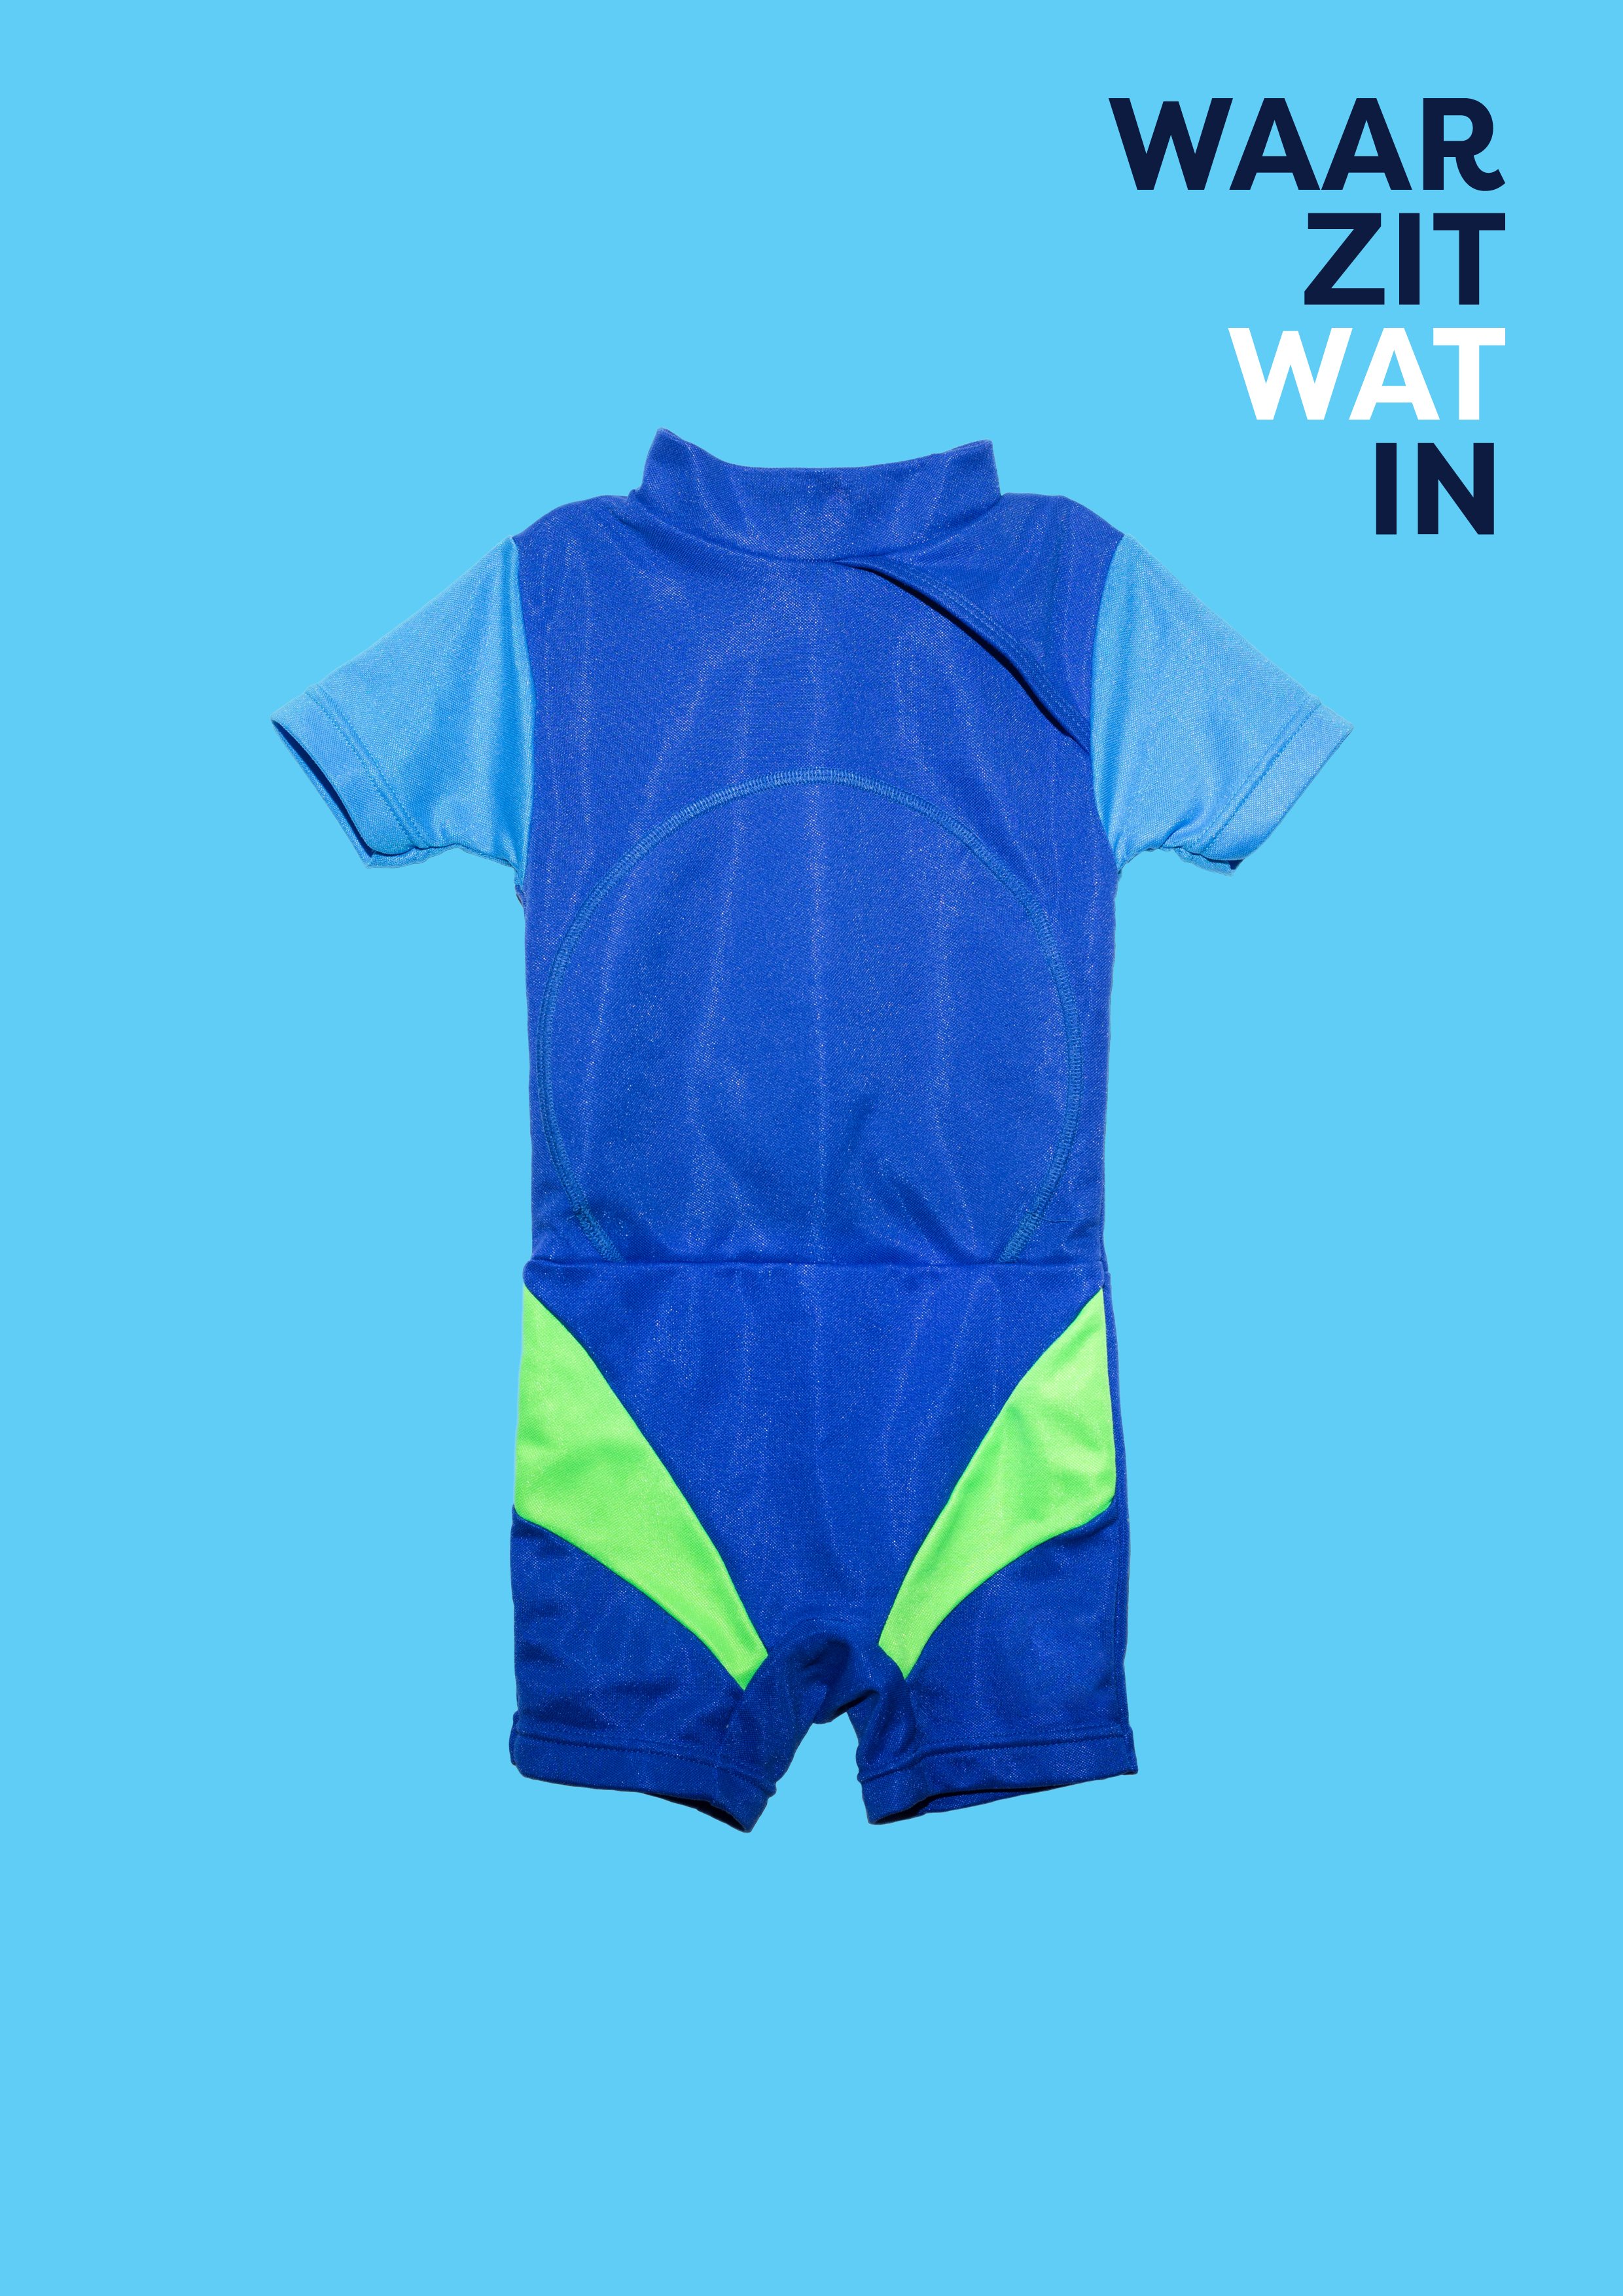 Vriendelijkheid Subtropisch pantoffel RIVM on Twitter: "Ga jij #zwemmen 🏊‍♀️ met dit warme weer? Een UV- beschermend zwempakje beschermt de huid van je kind tegen de #zon ☀️. Ook  in kleding zitten chemische stoffen. Wil jij